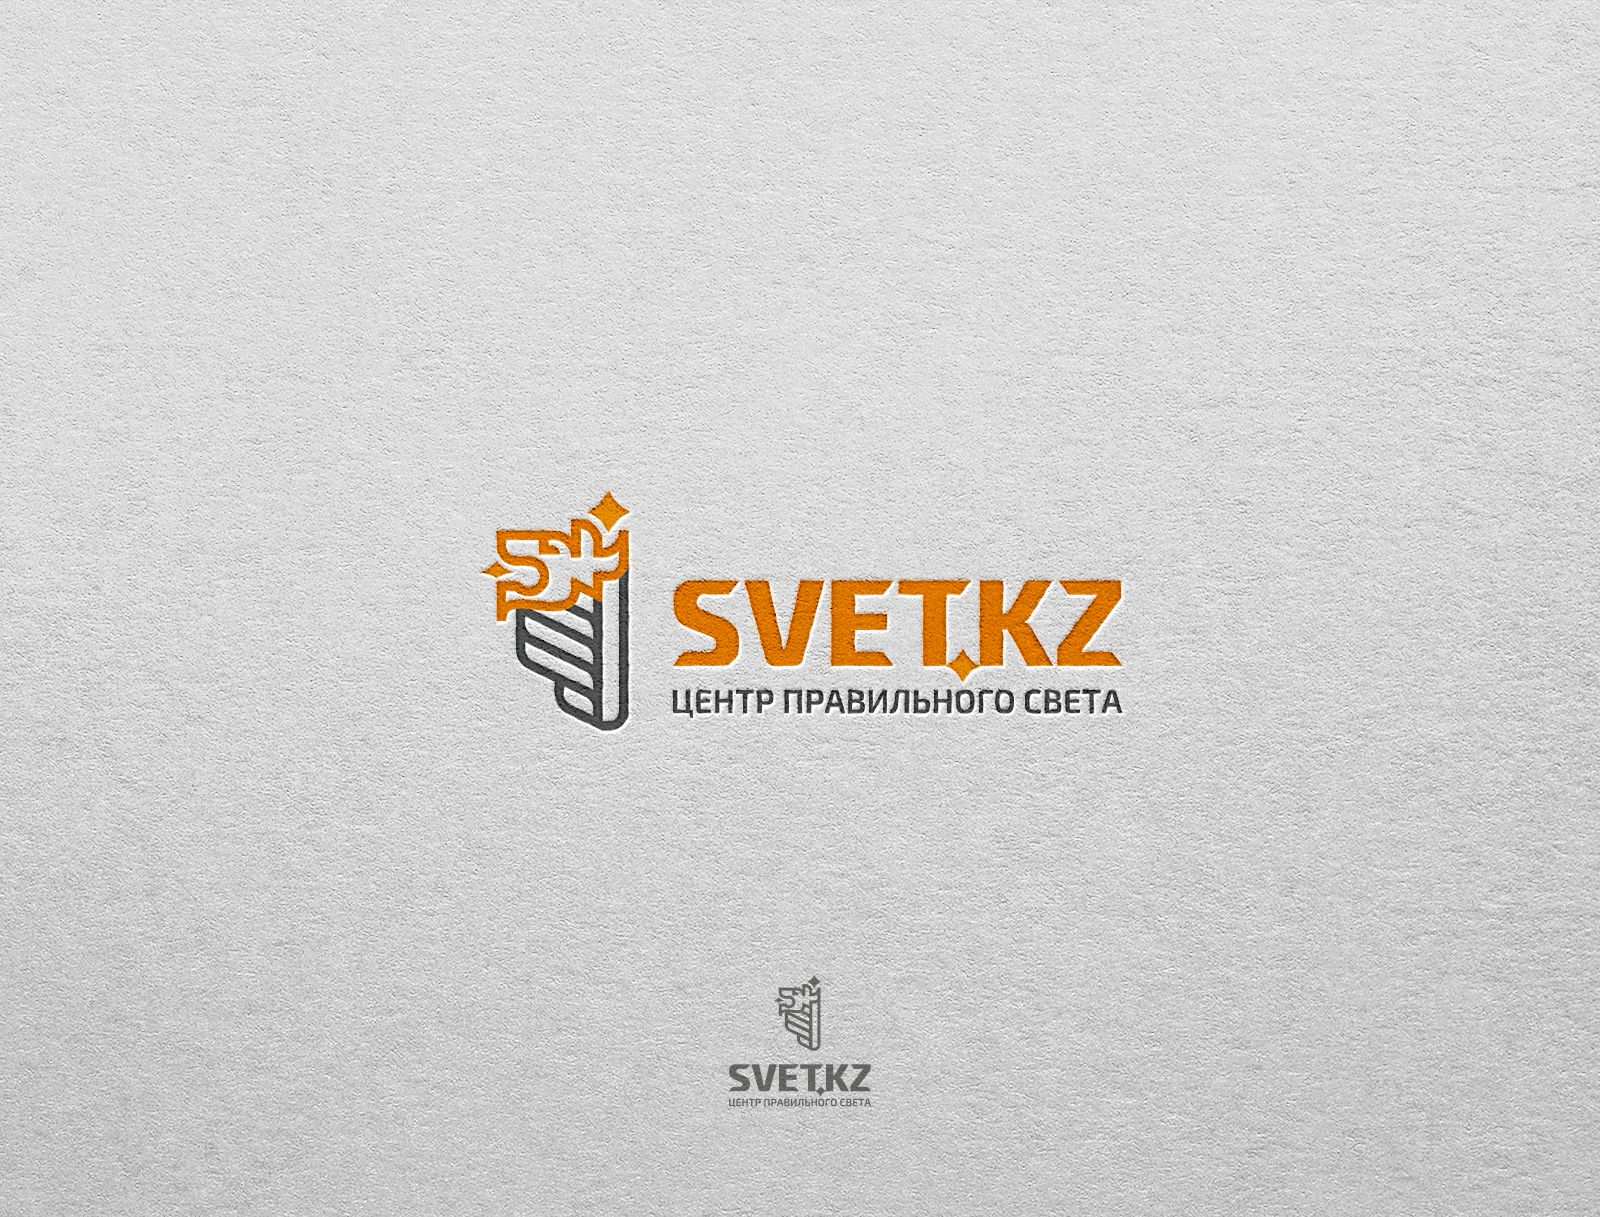 Лого и фирменный стиль для SVET.kz - дизайнер faraonov